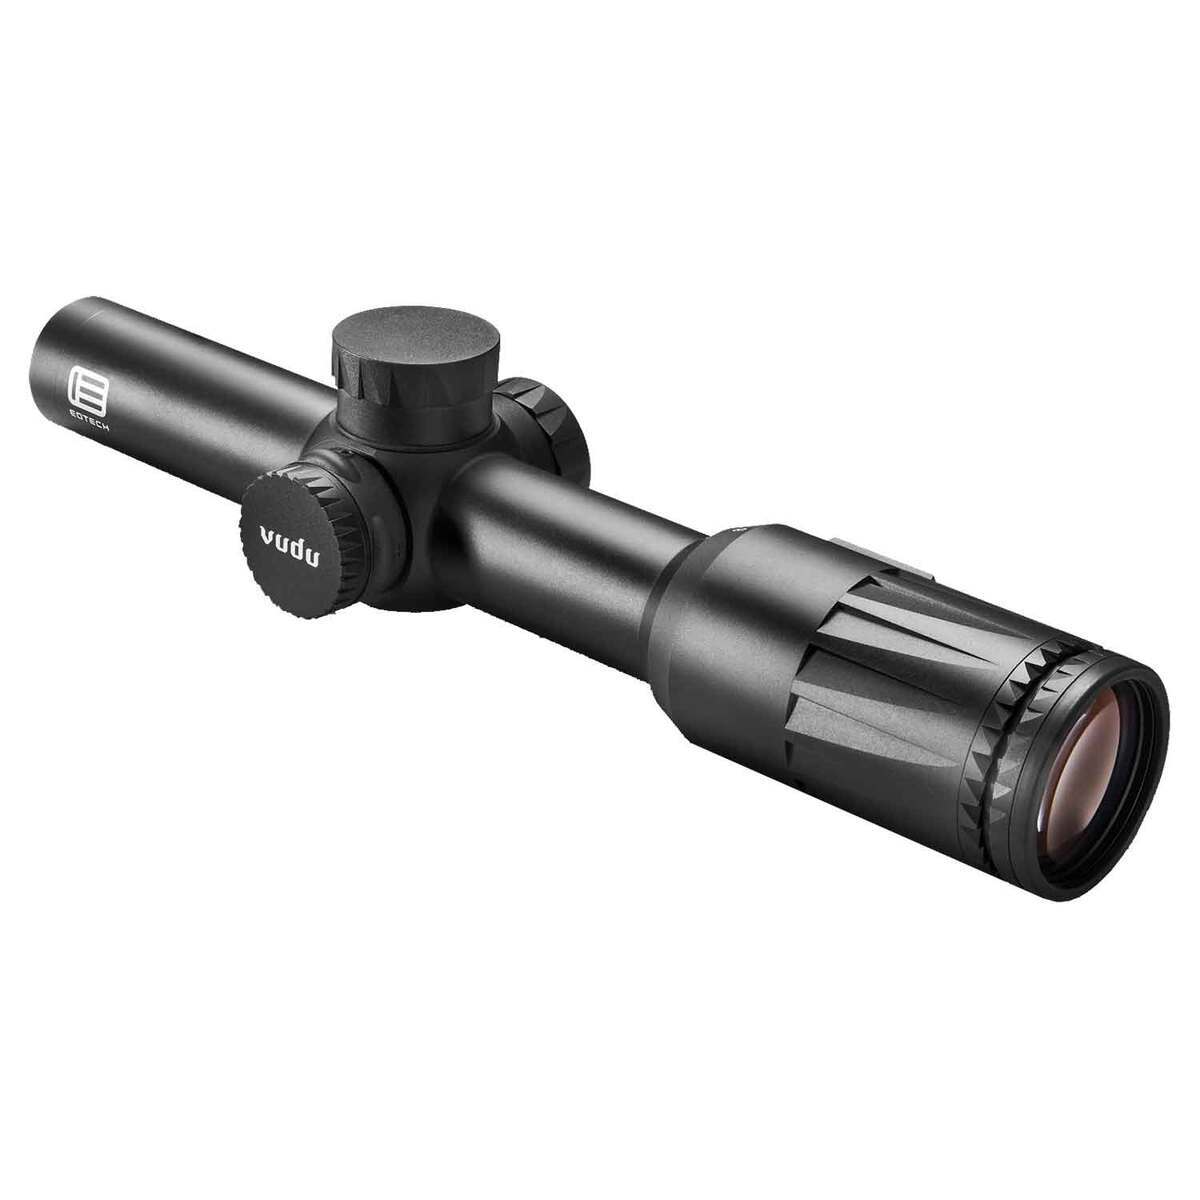 EOTECH Vudu 1-8 Riflescope